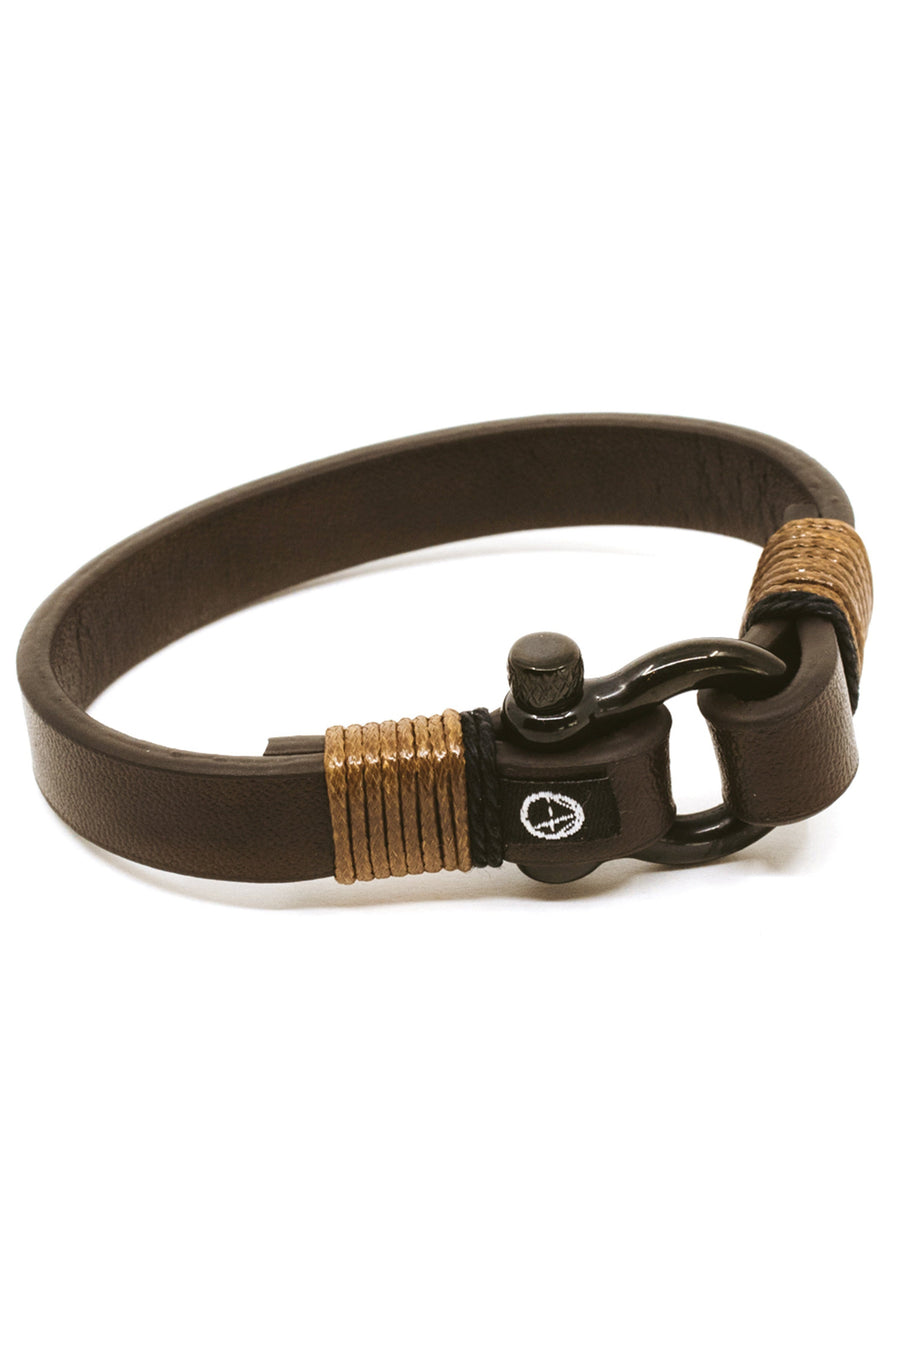 Shackle Leather Ocean Lab Bracelet